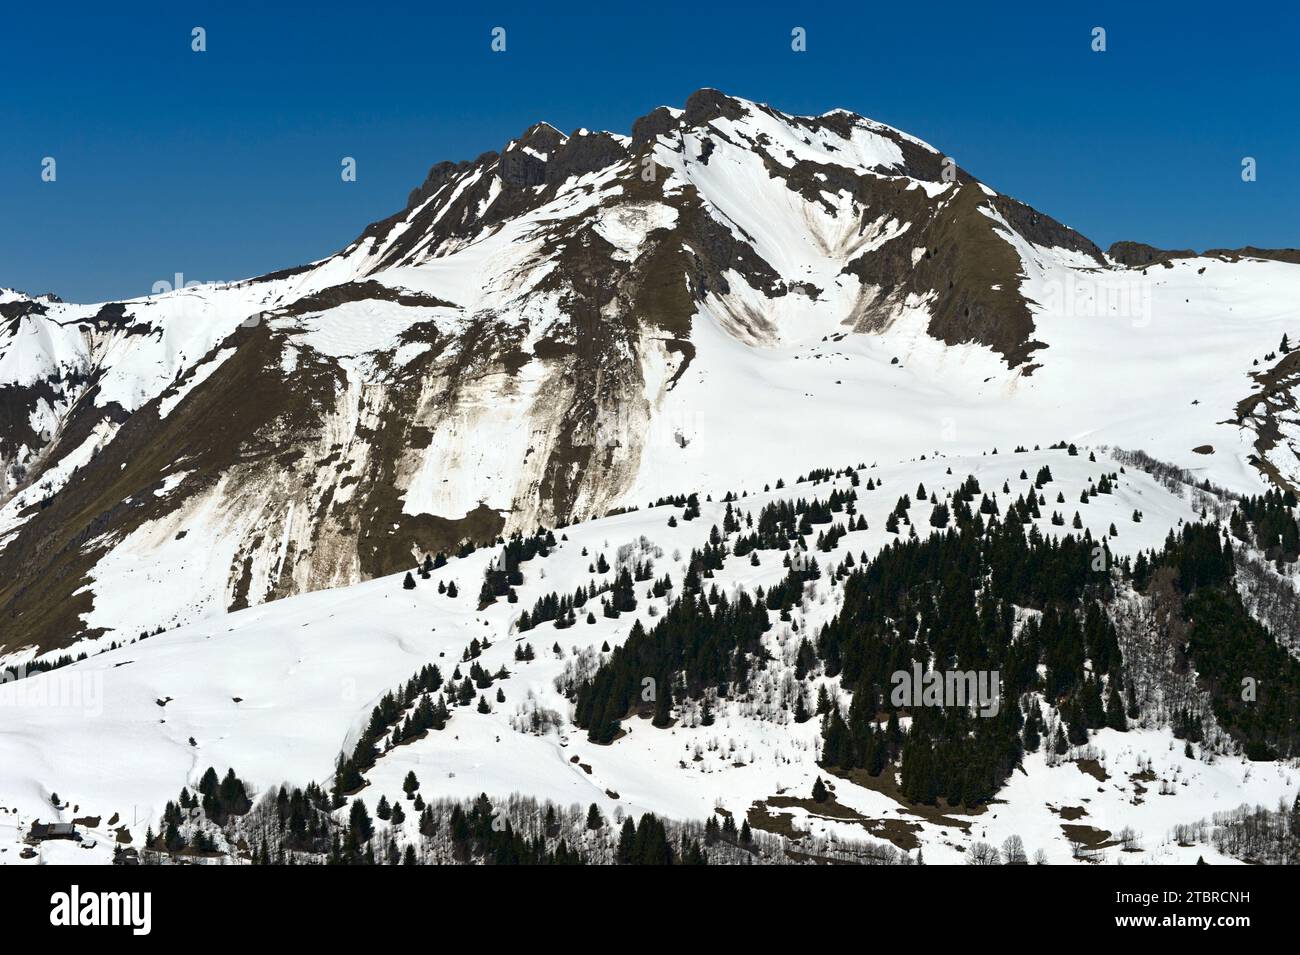 Pentes enneigées avec avalanches au printemps, Géoparc UNESCO Chablais, les Gets, haute-Savoie, France Banque D'Images